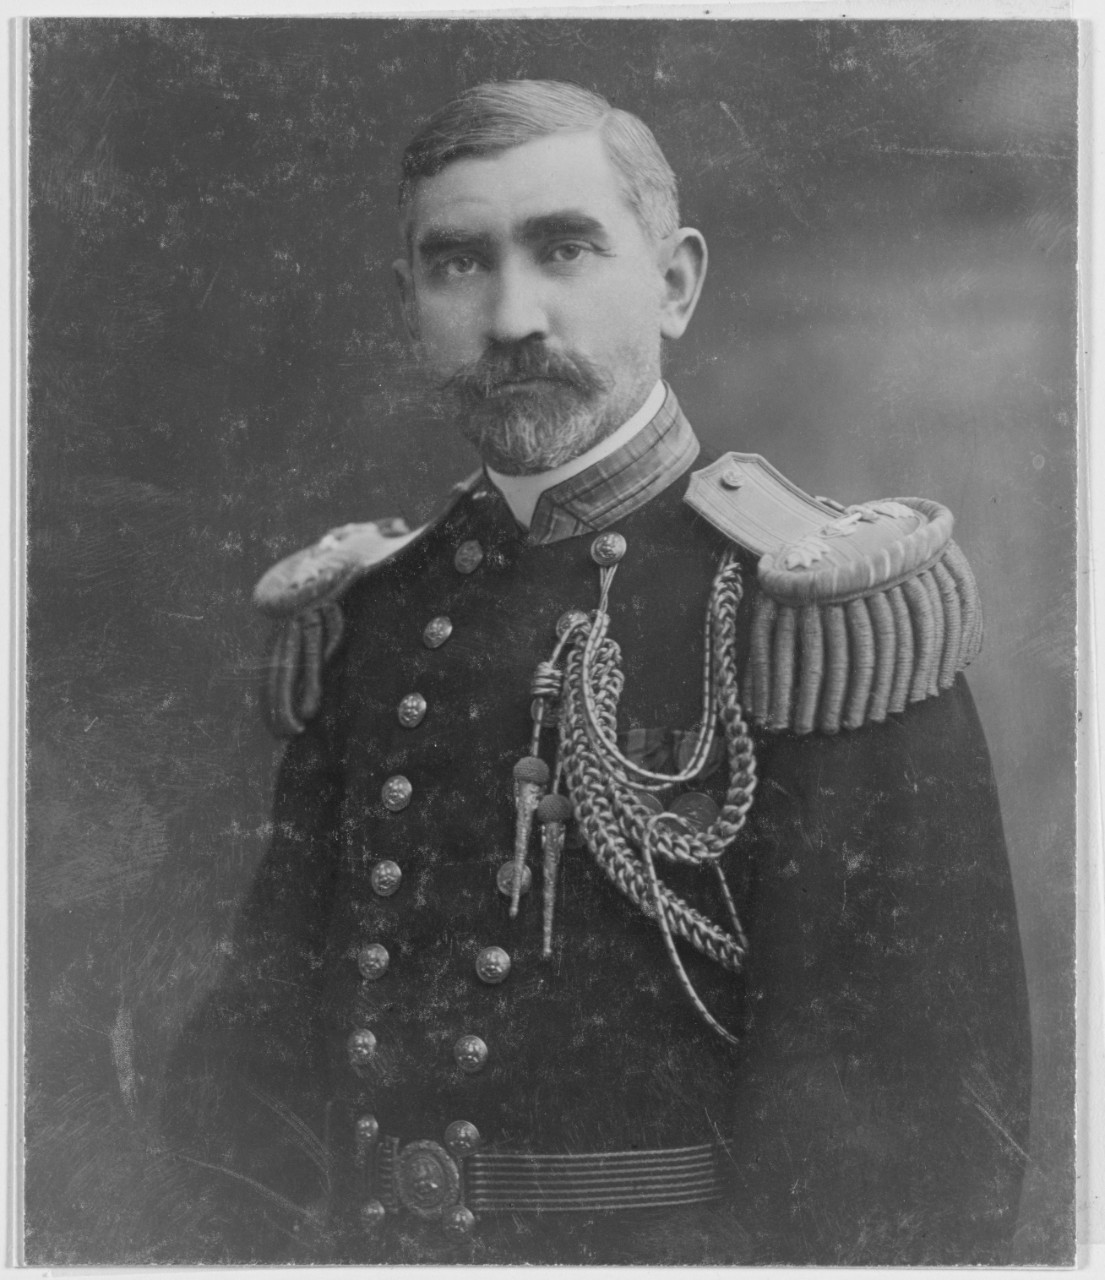 Commander Andrew T. Long, USN